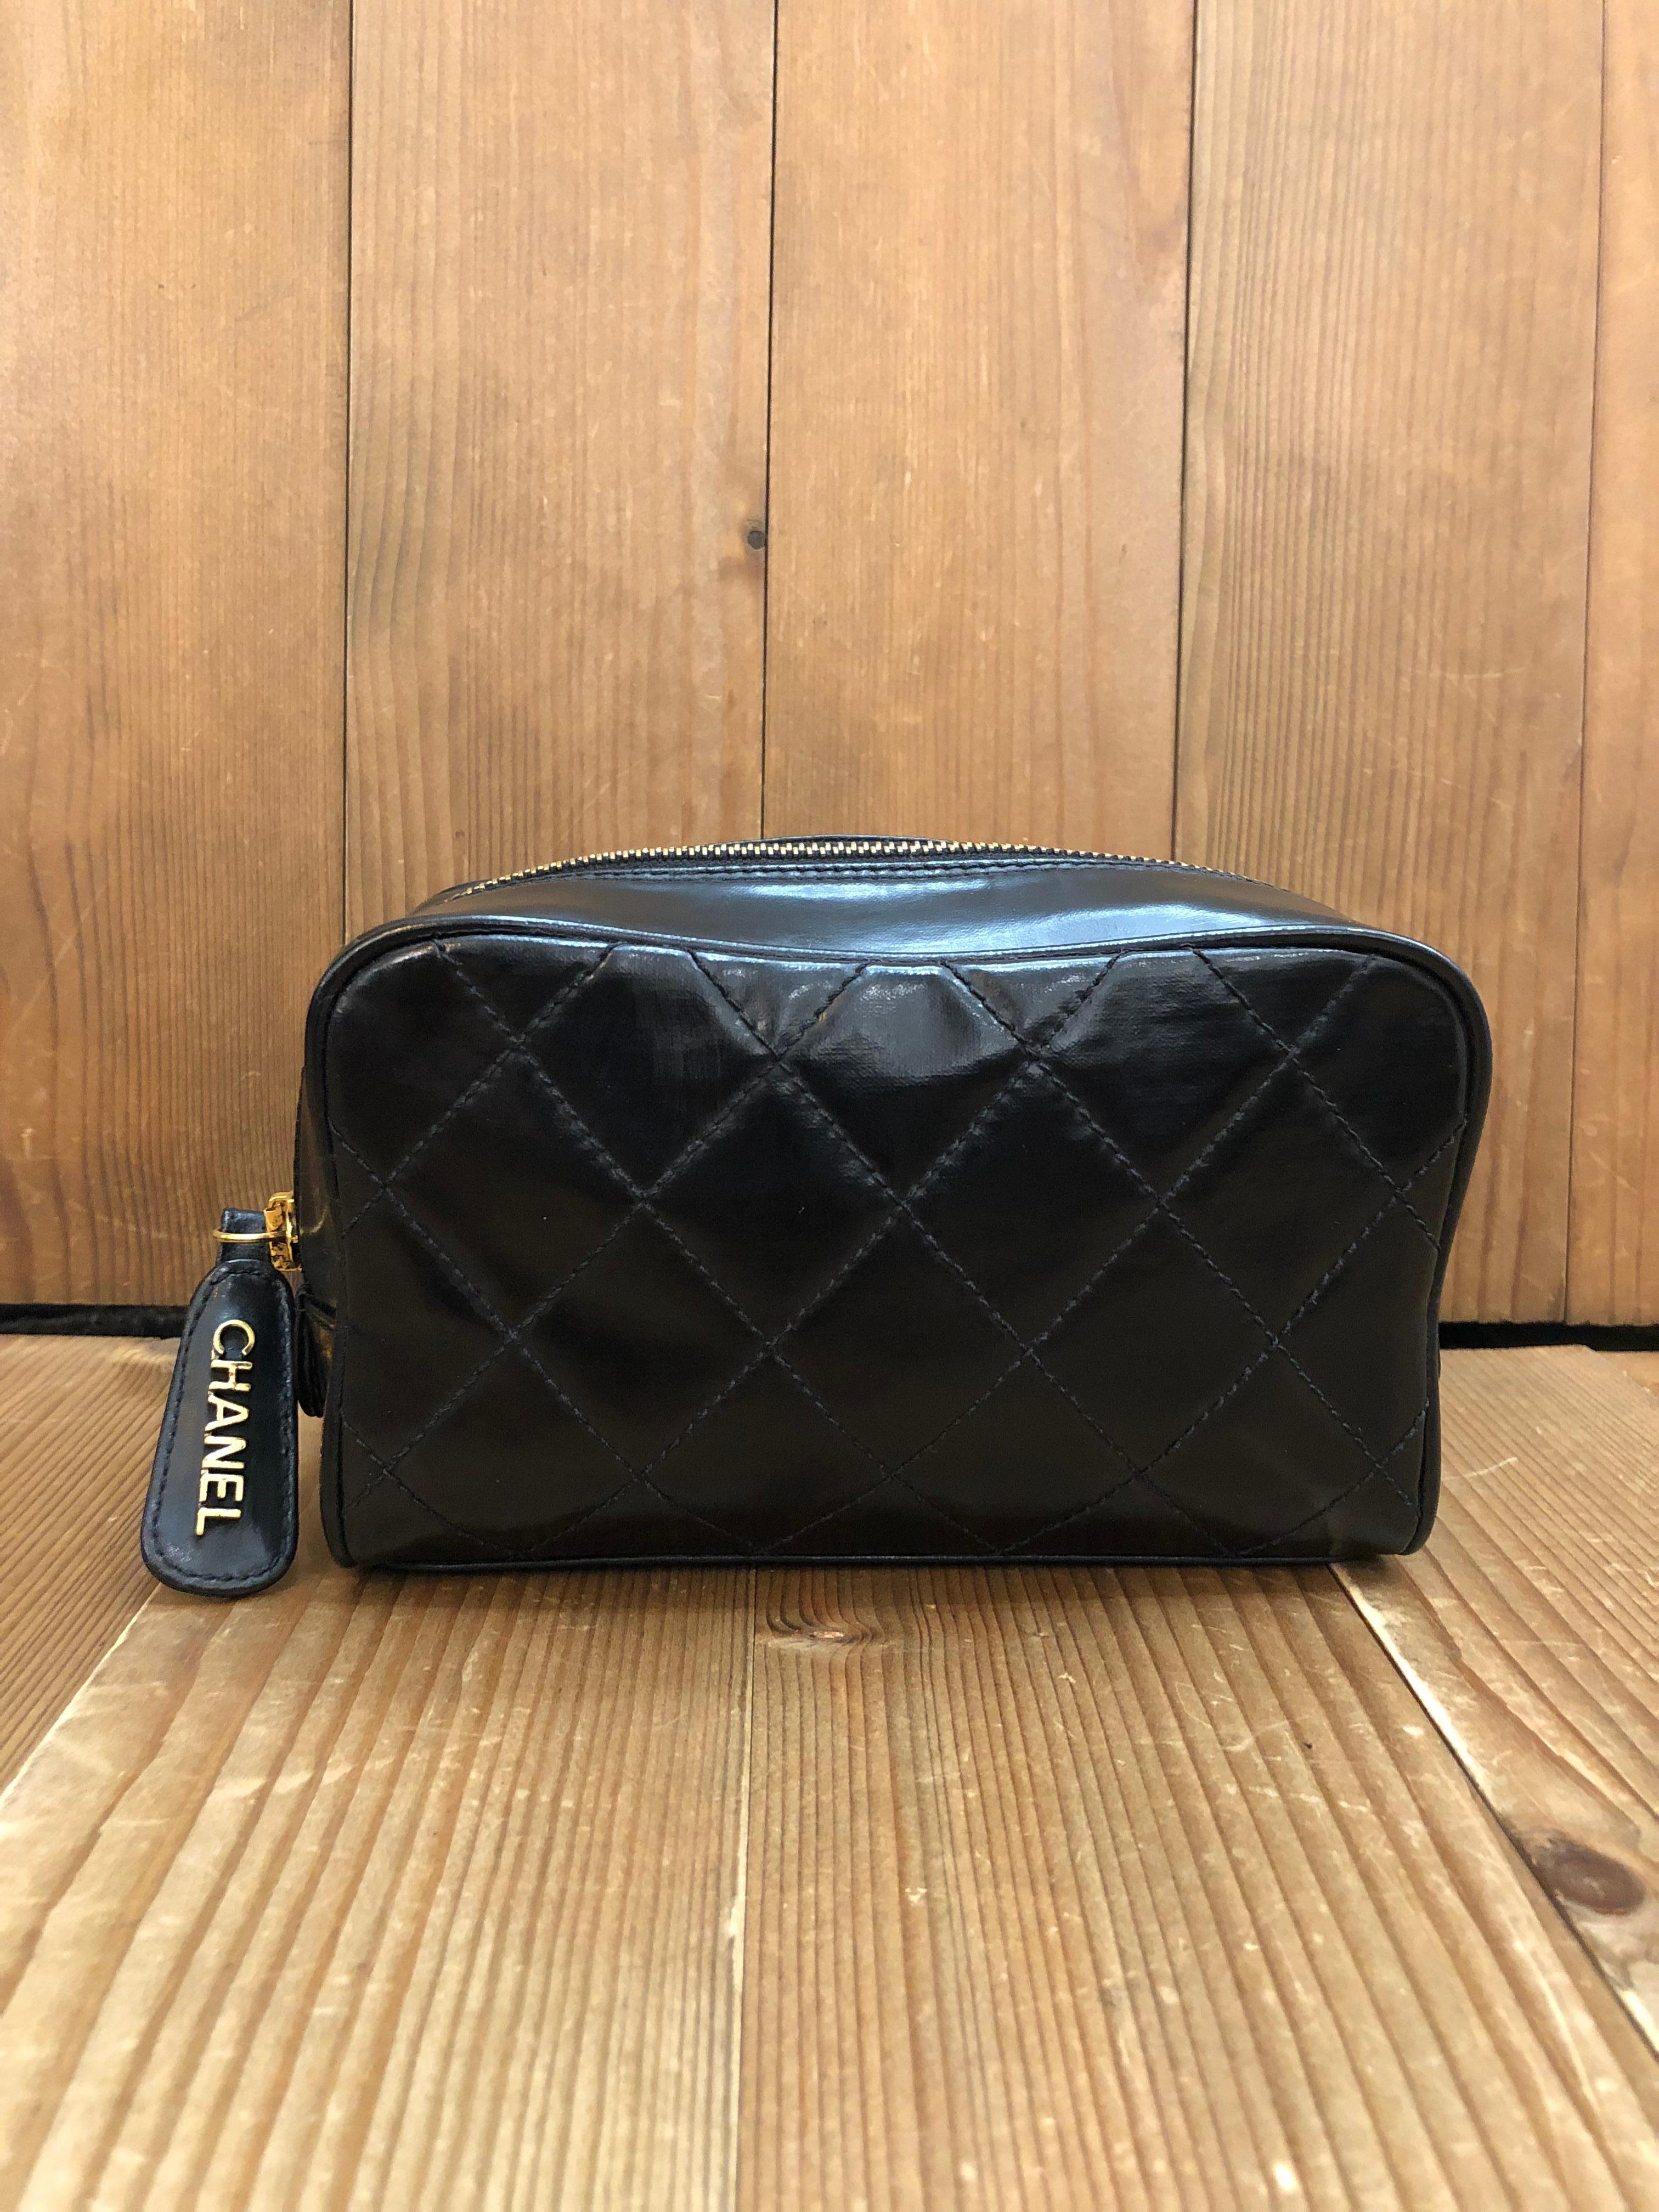 Diese Vintage CHANEL Kosmetiktasche Clutch Bag ist aus schwarzem beschichtetem Canvas mit Rautensteppmuster gefertigt. Der Reißverschluss an der Oberseite führt zu einem Innenraum aus schwarzem Lammfell mit zwei Innentaschen mit Reißverschluss.